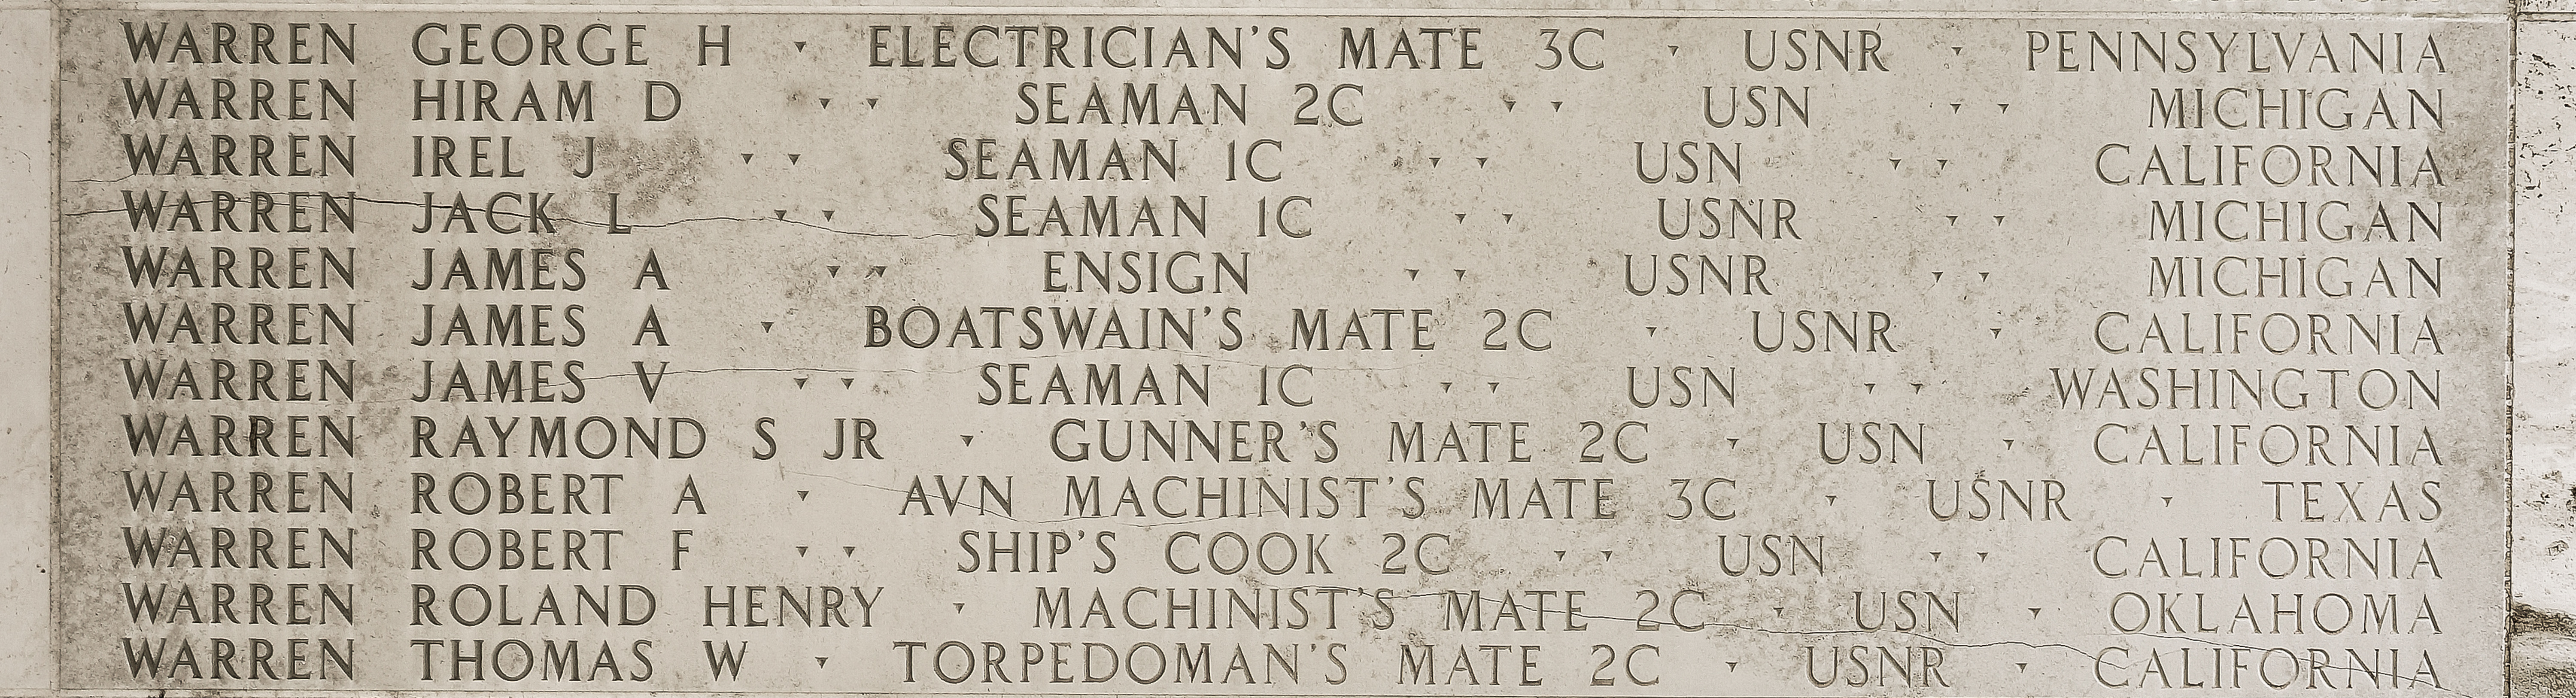 James A. Warren, Boatswain's Mate Second Class